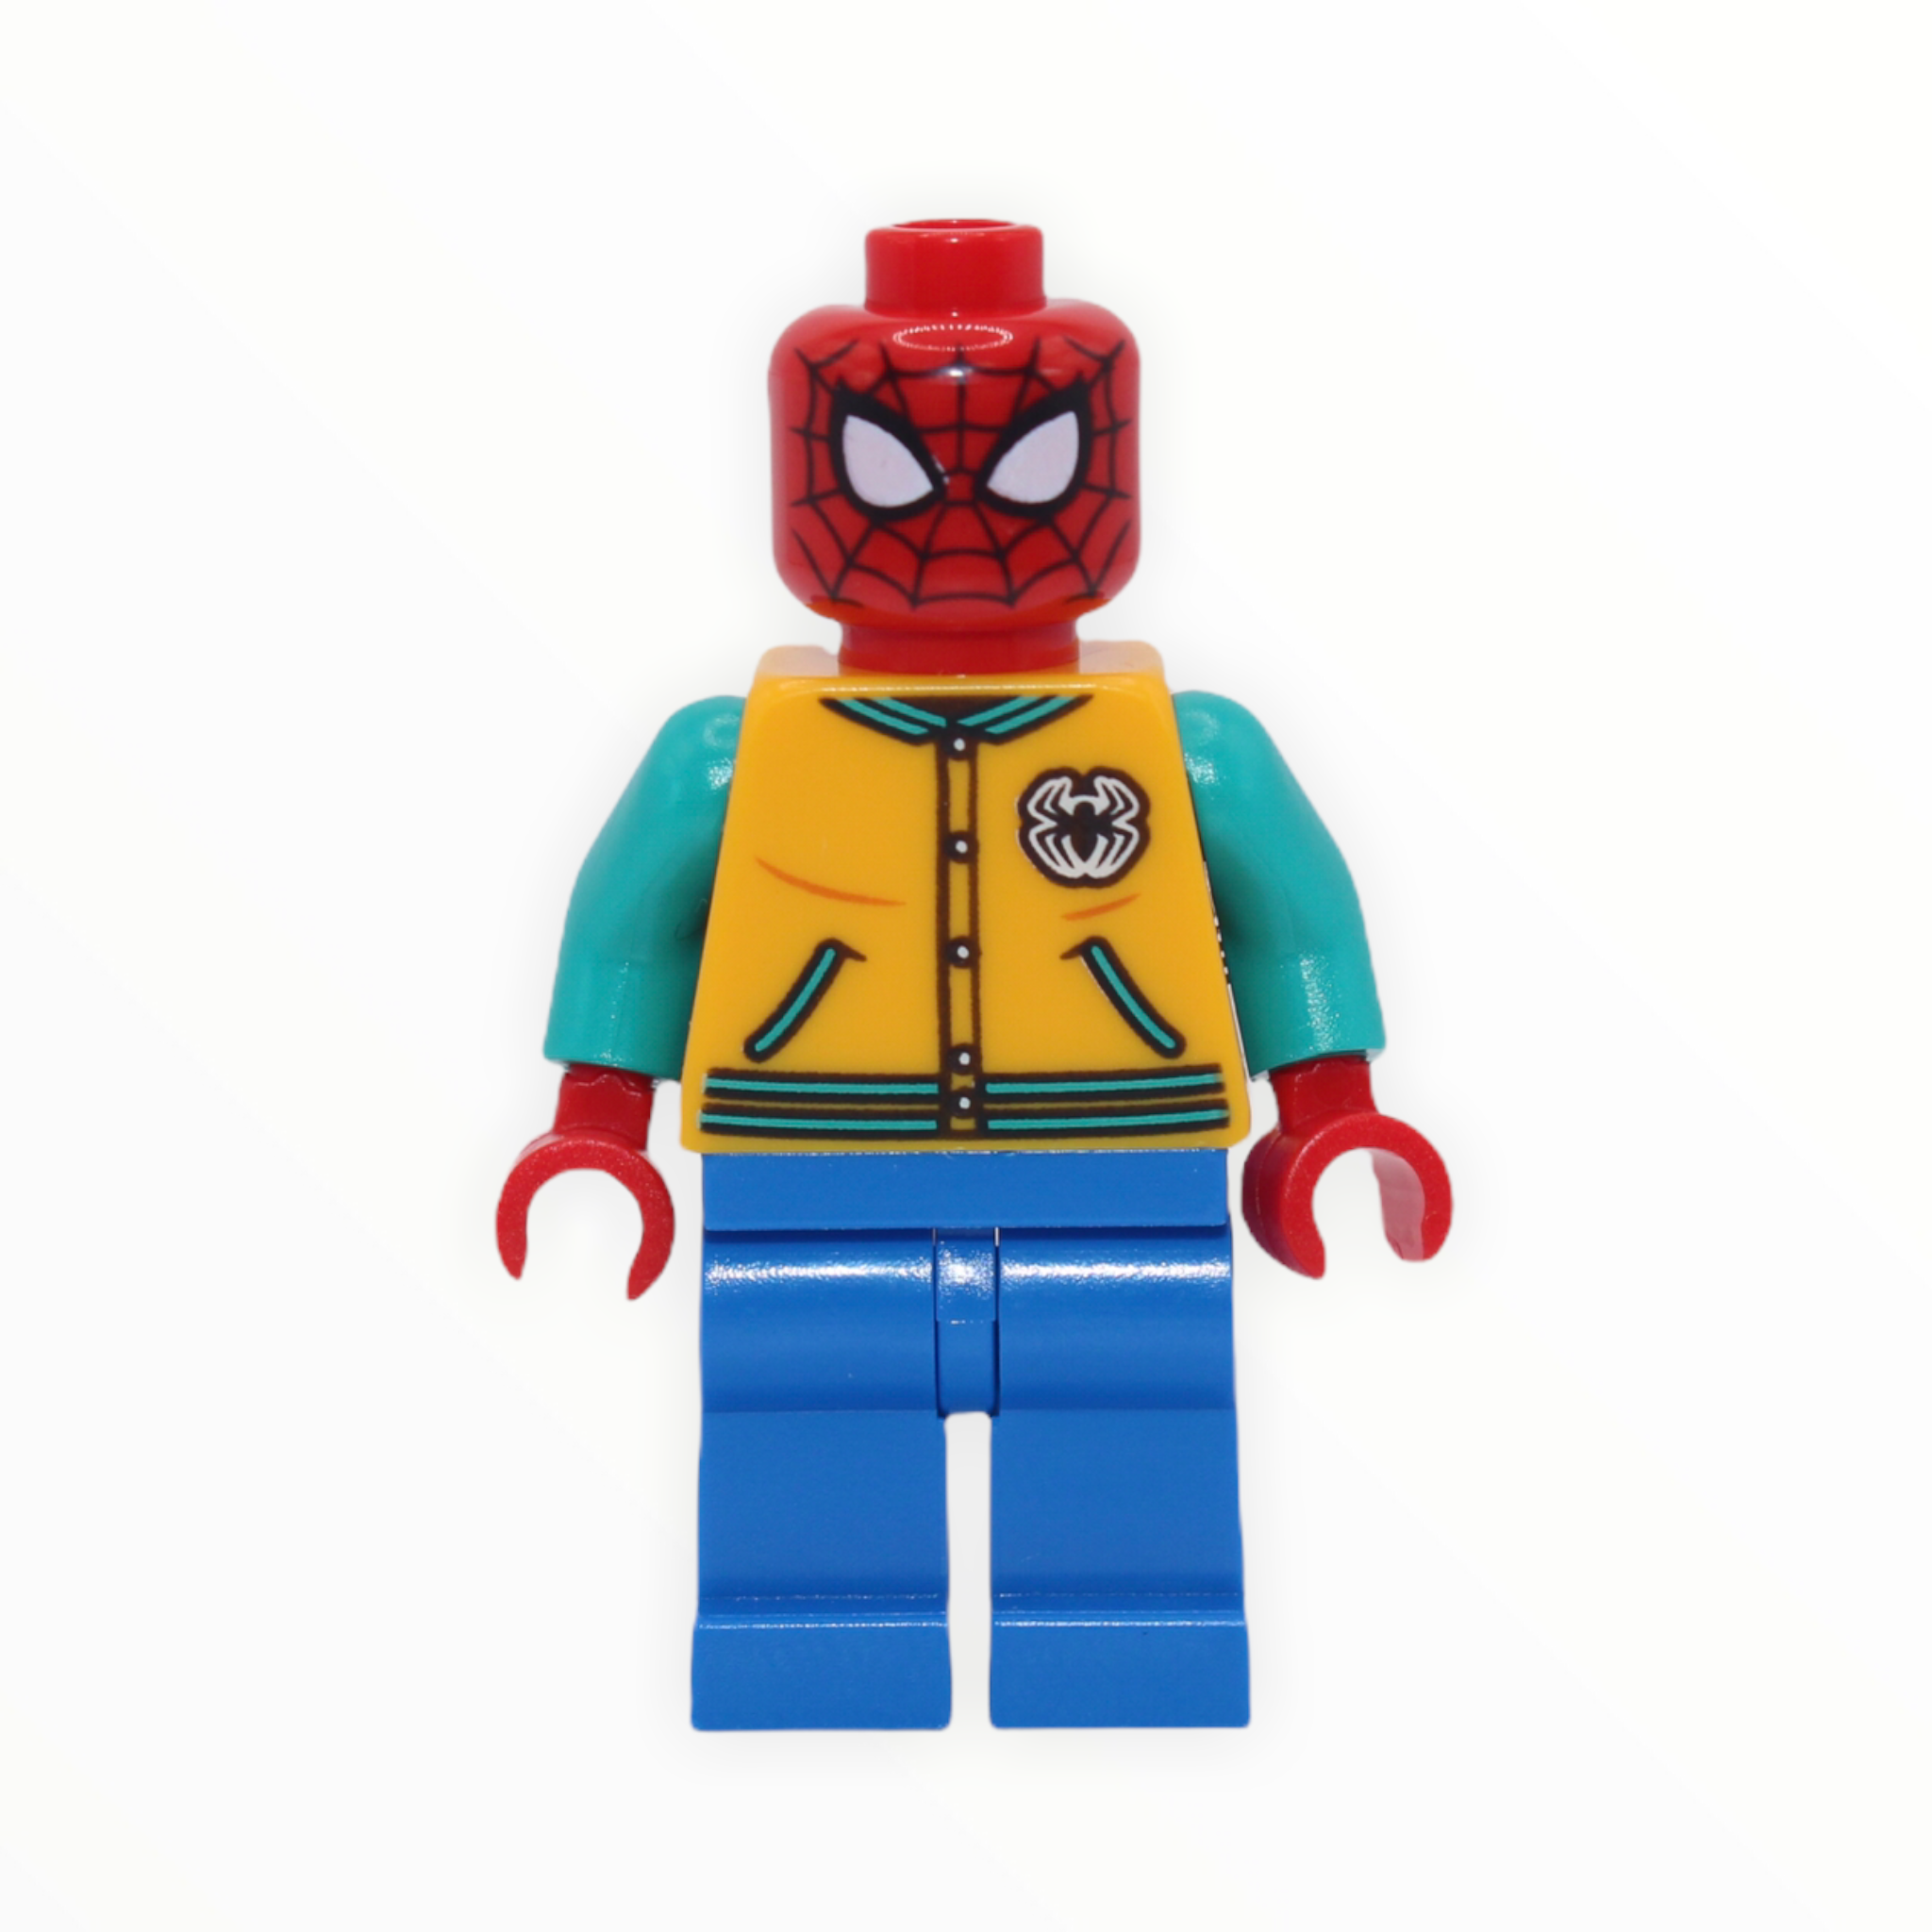 Spider-Man (letter jacket)